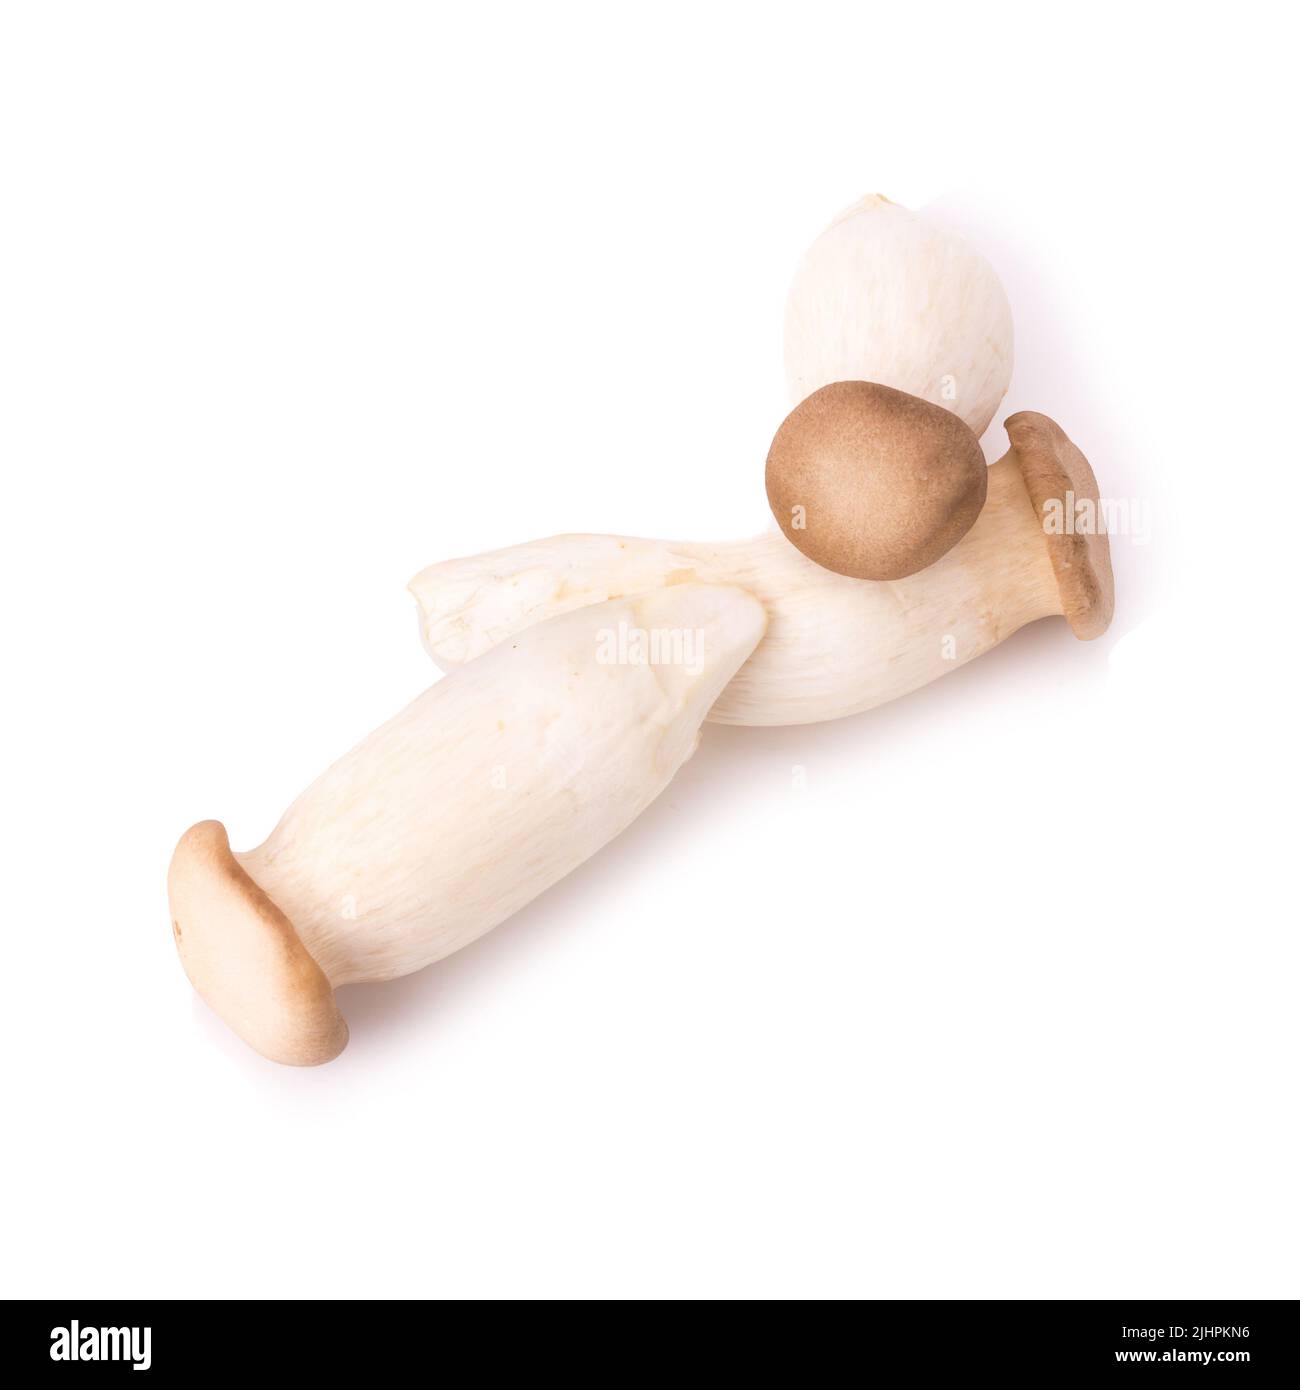 King Oyster mushroom (Eringi) on white backgroud. Stock Photo